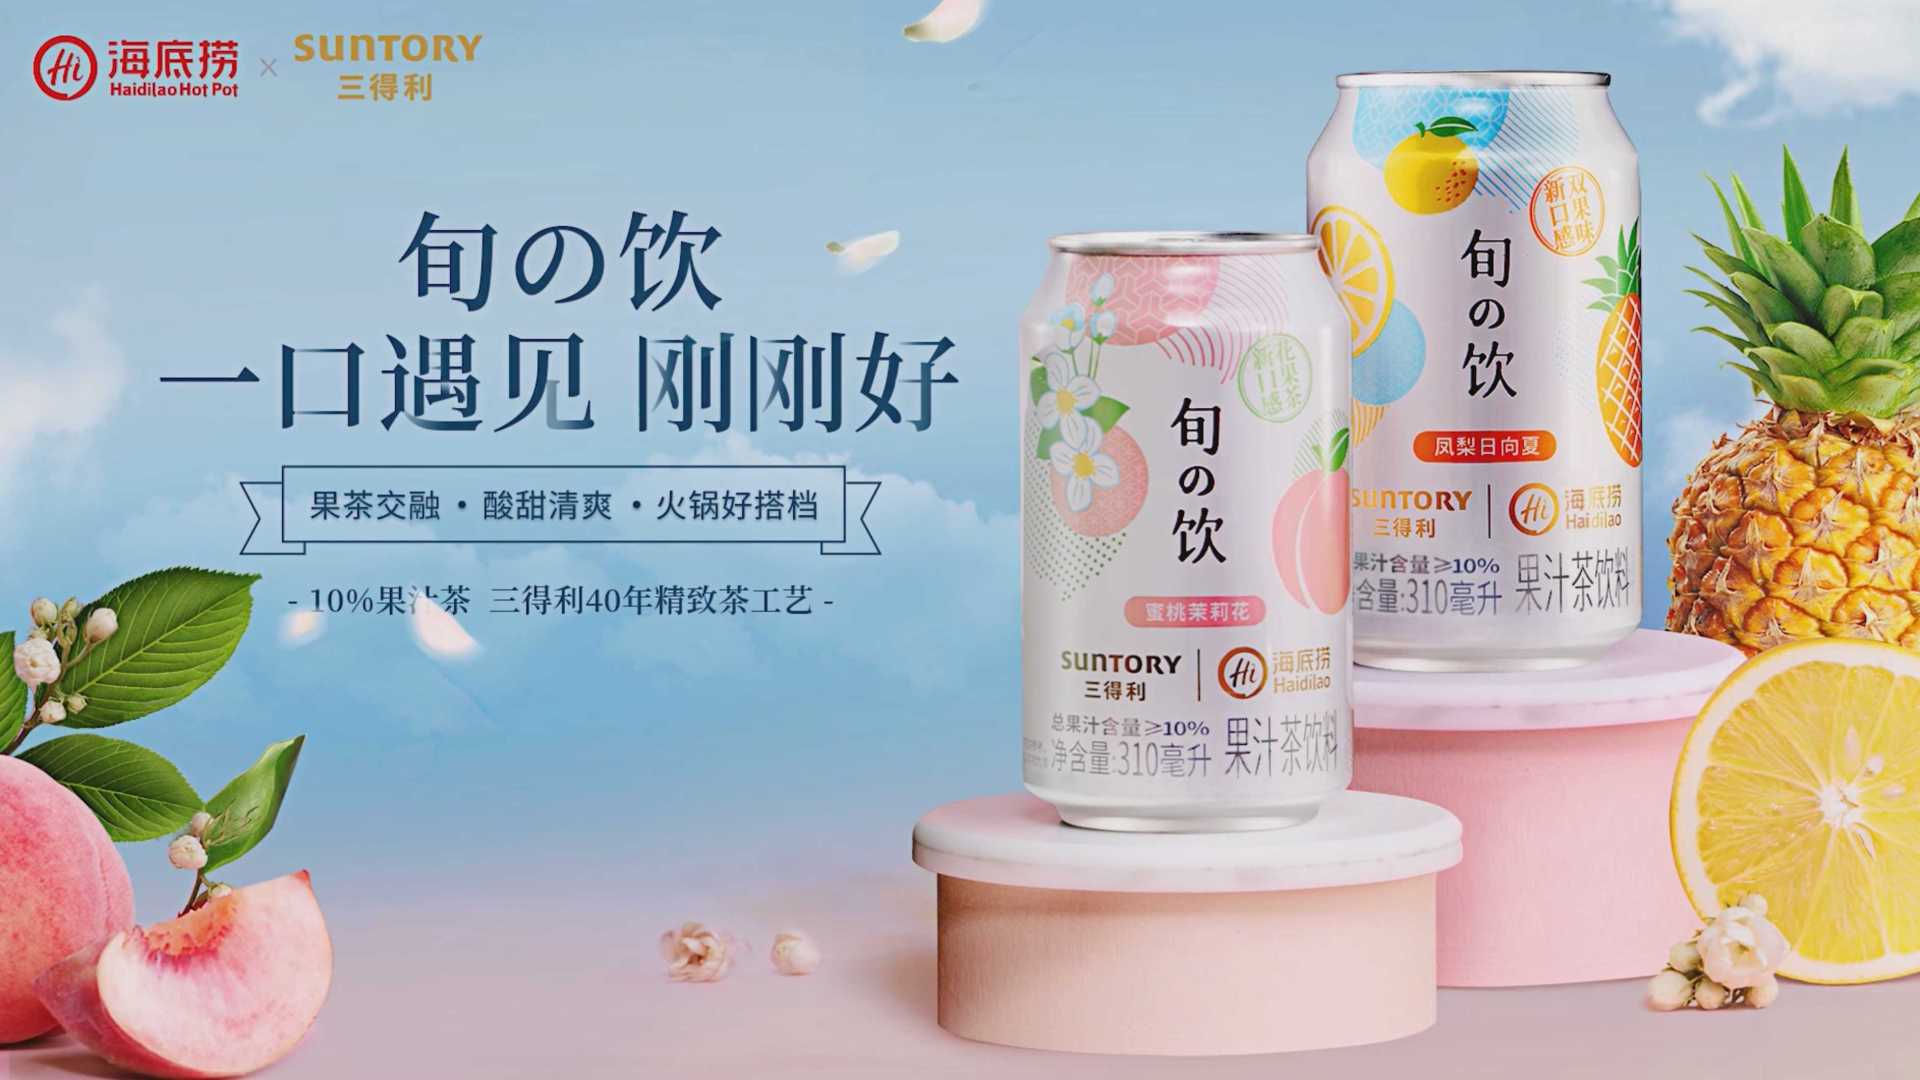 海底捞 x 三得利旬茶饮新品上市推介篇